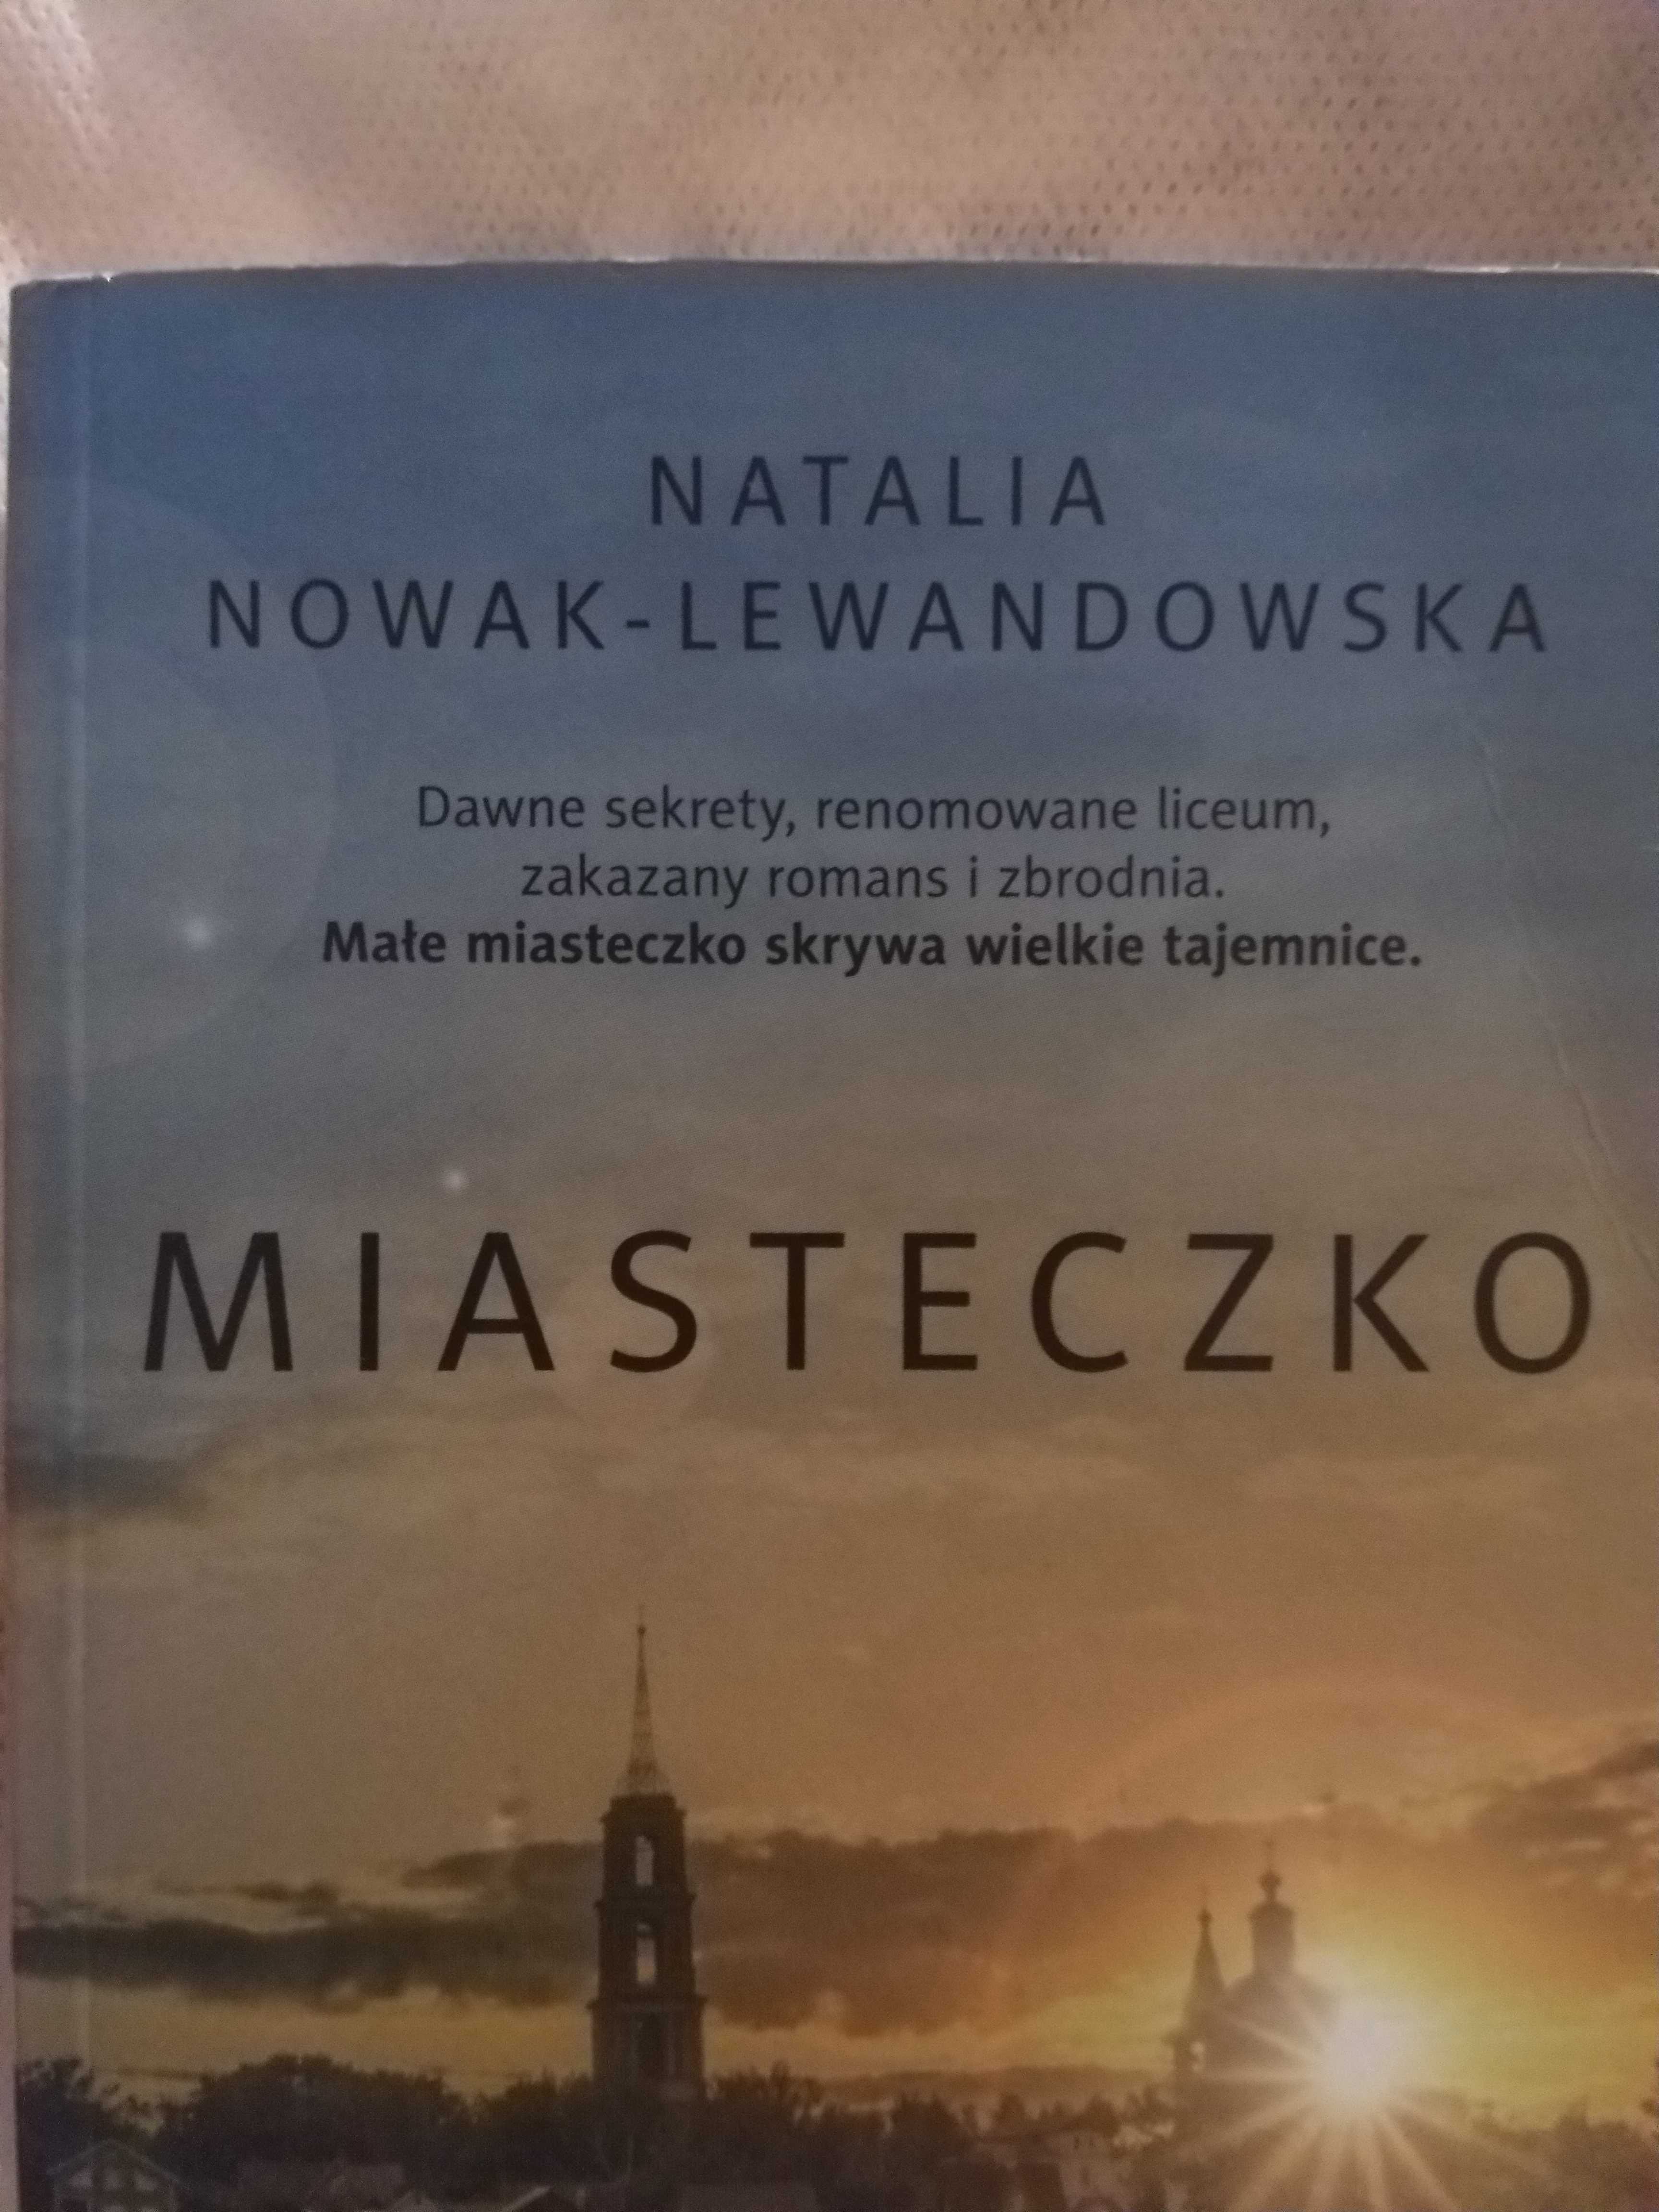 MIASTECZKO - Natalia Nowak-lewandowska